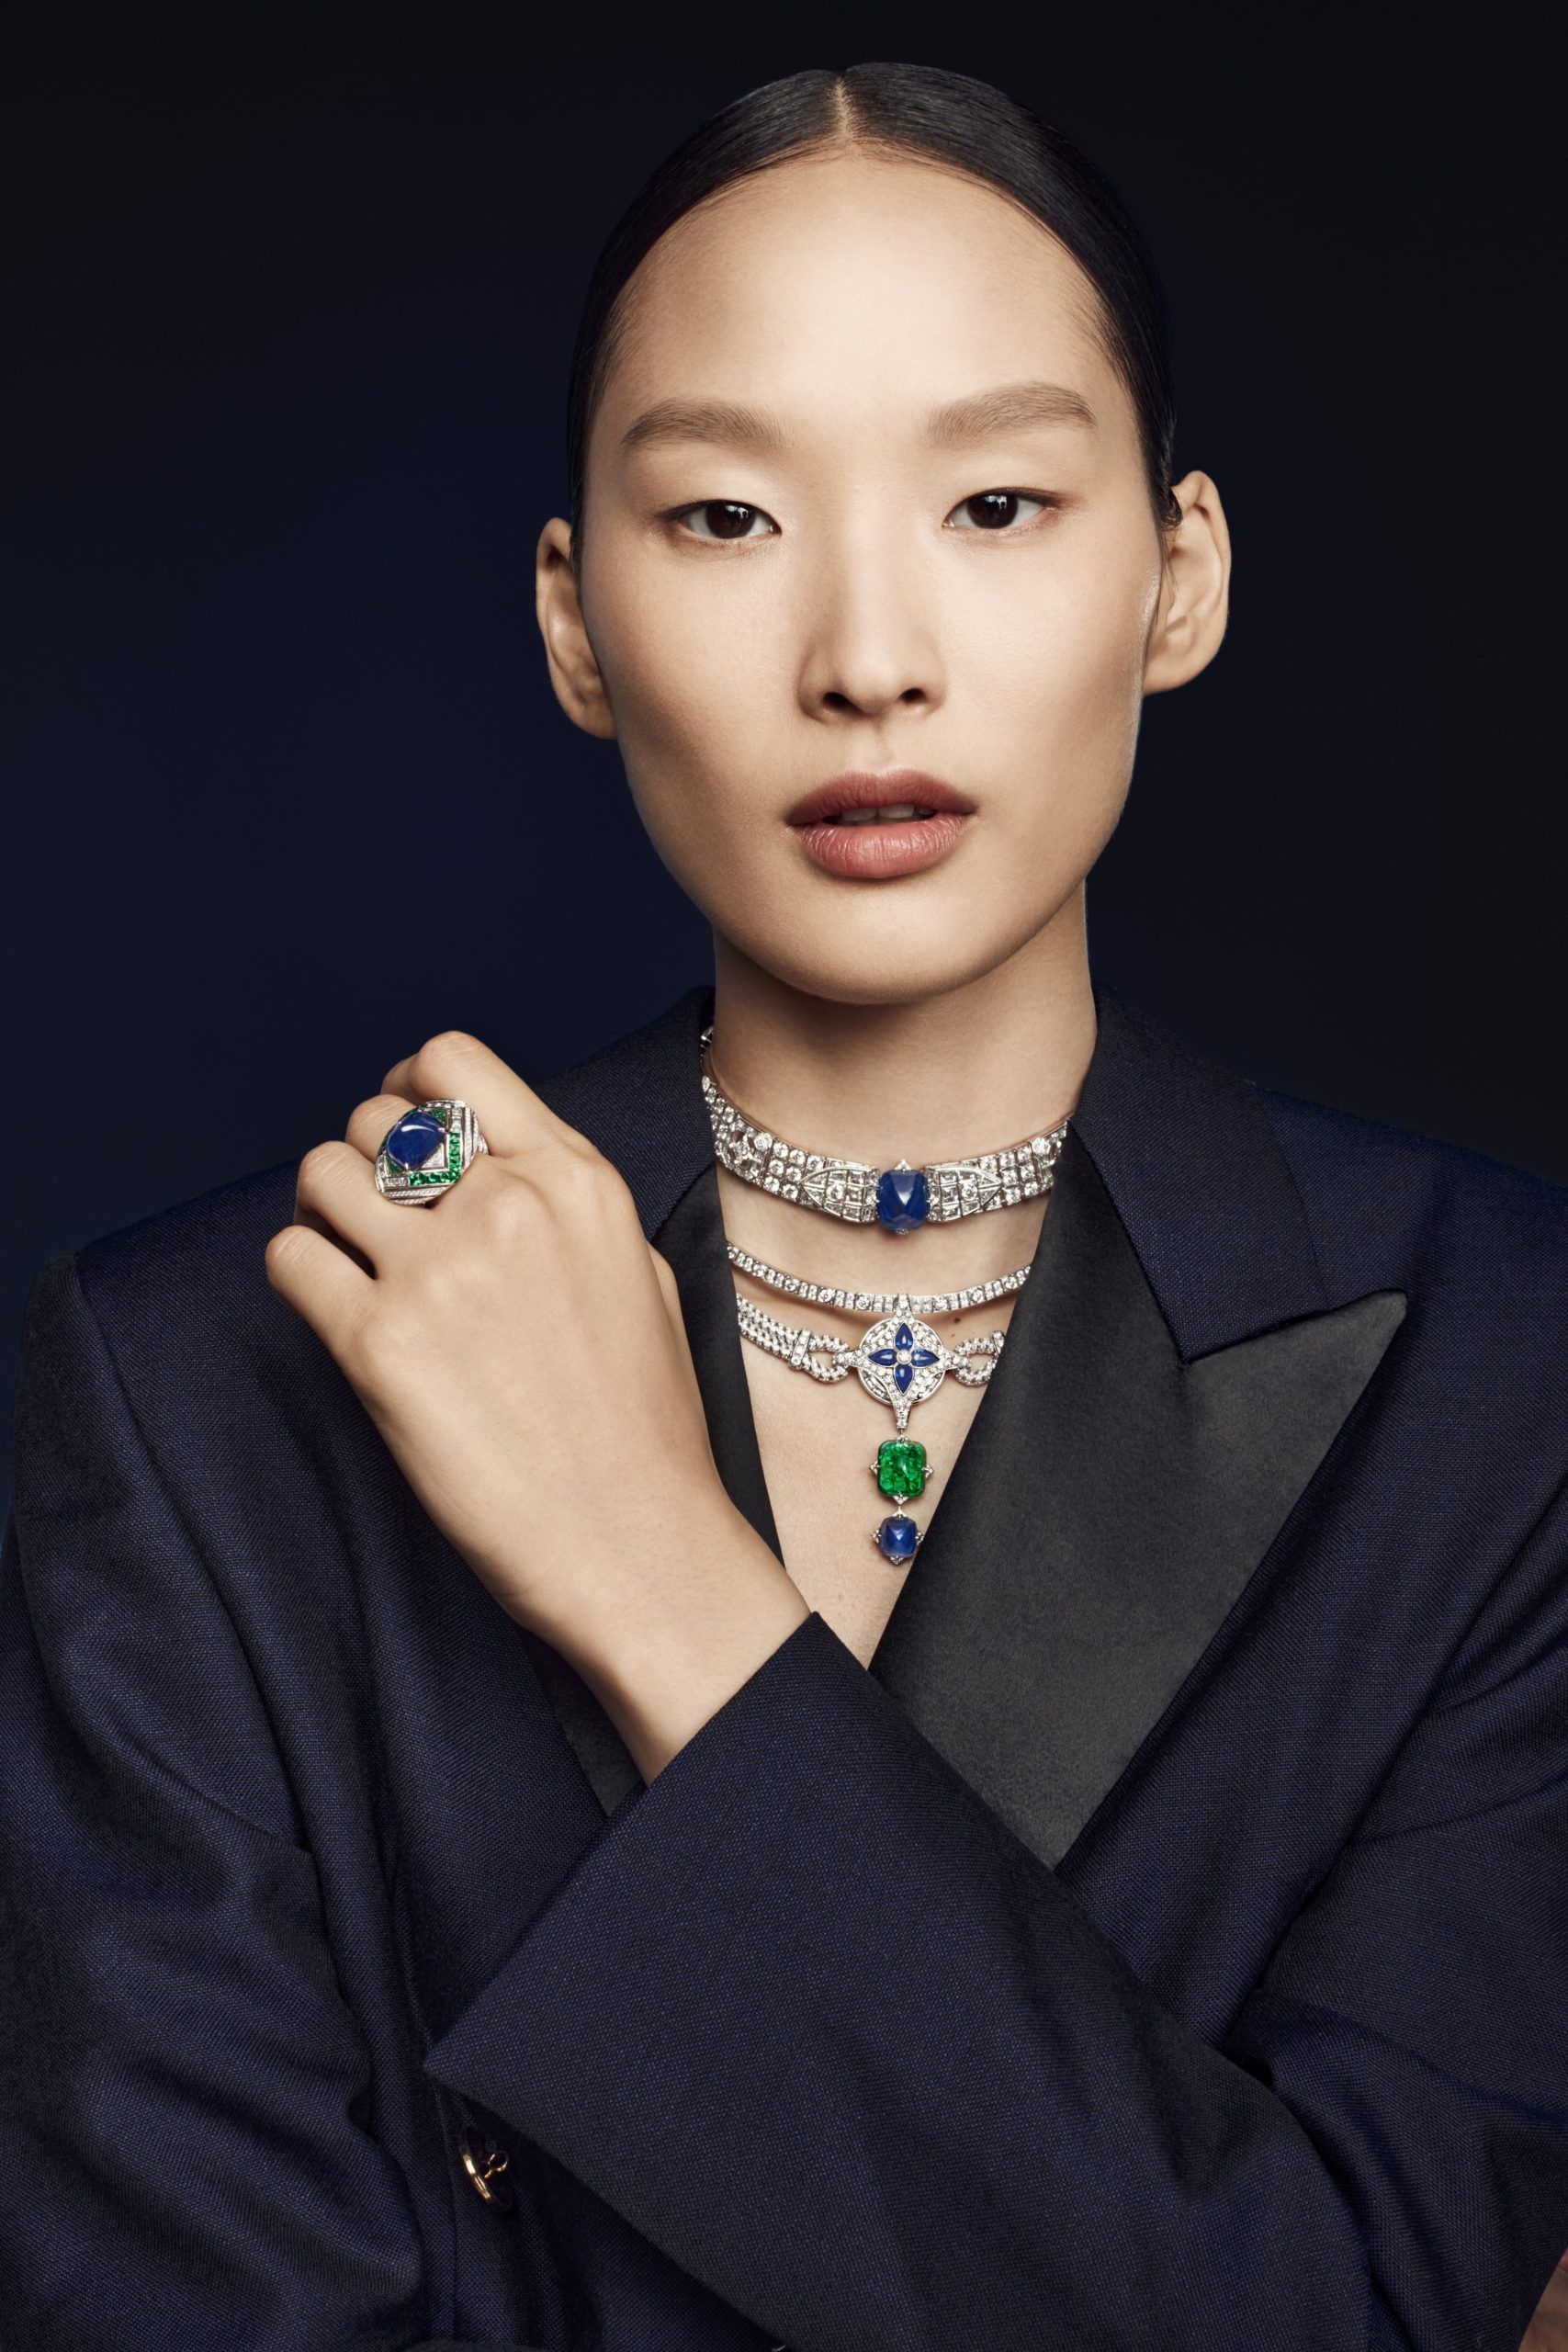 Louis Vuitton Diamond Campaign (Louis Vuitton)